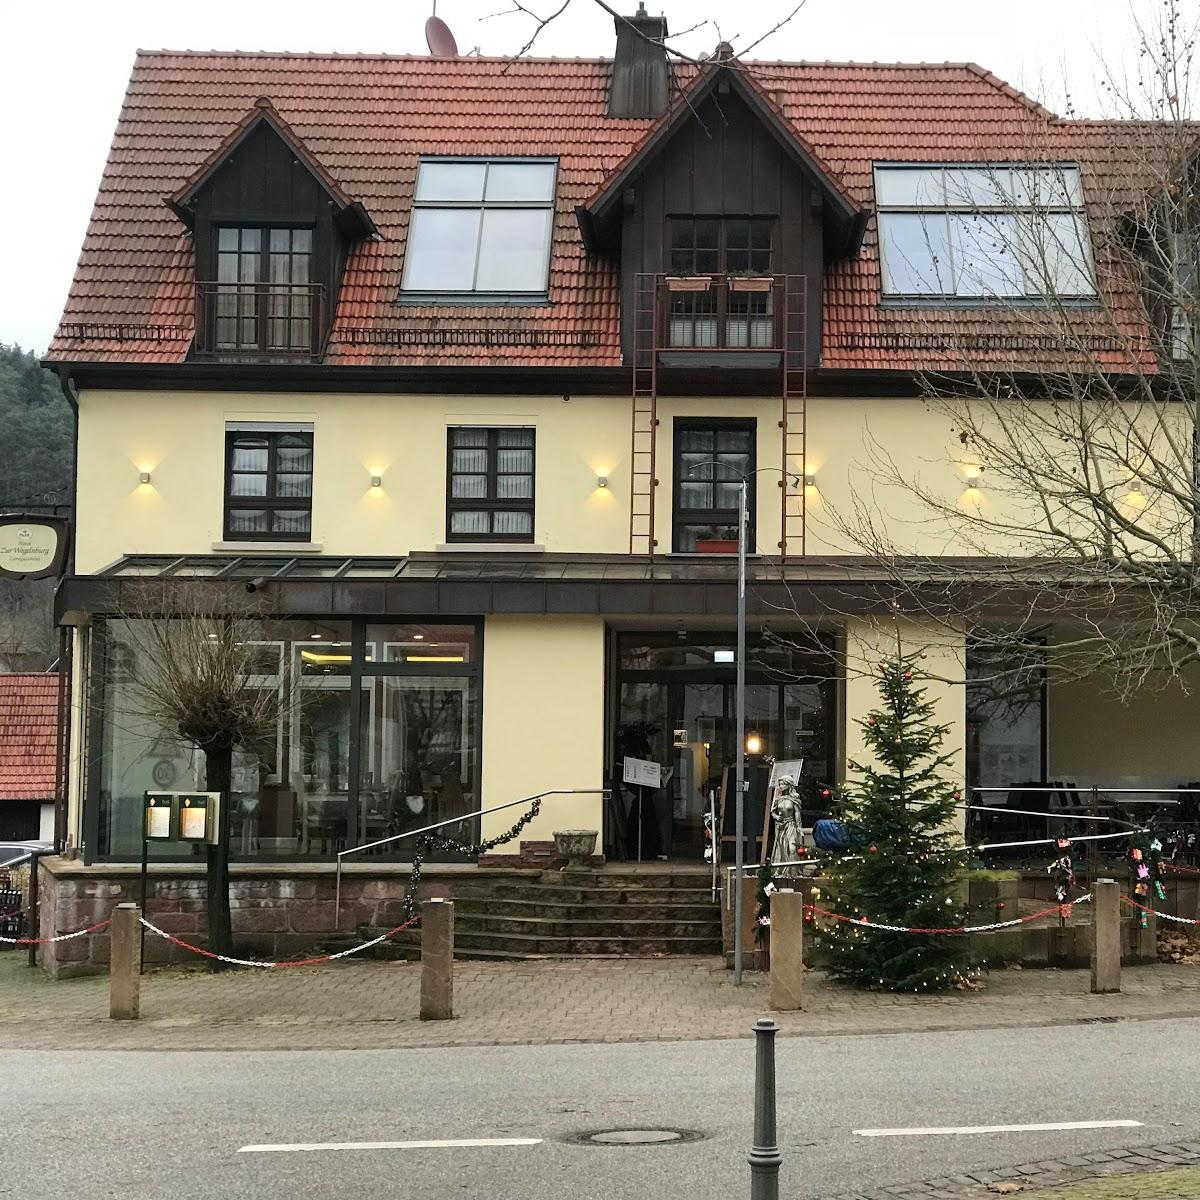 Restaurant "GASTHAUS WEGELNBURG GMBH" in Nothweiler